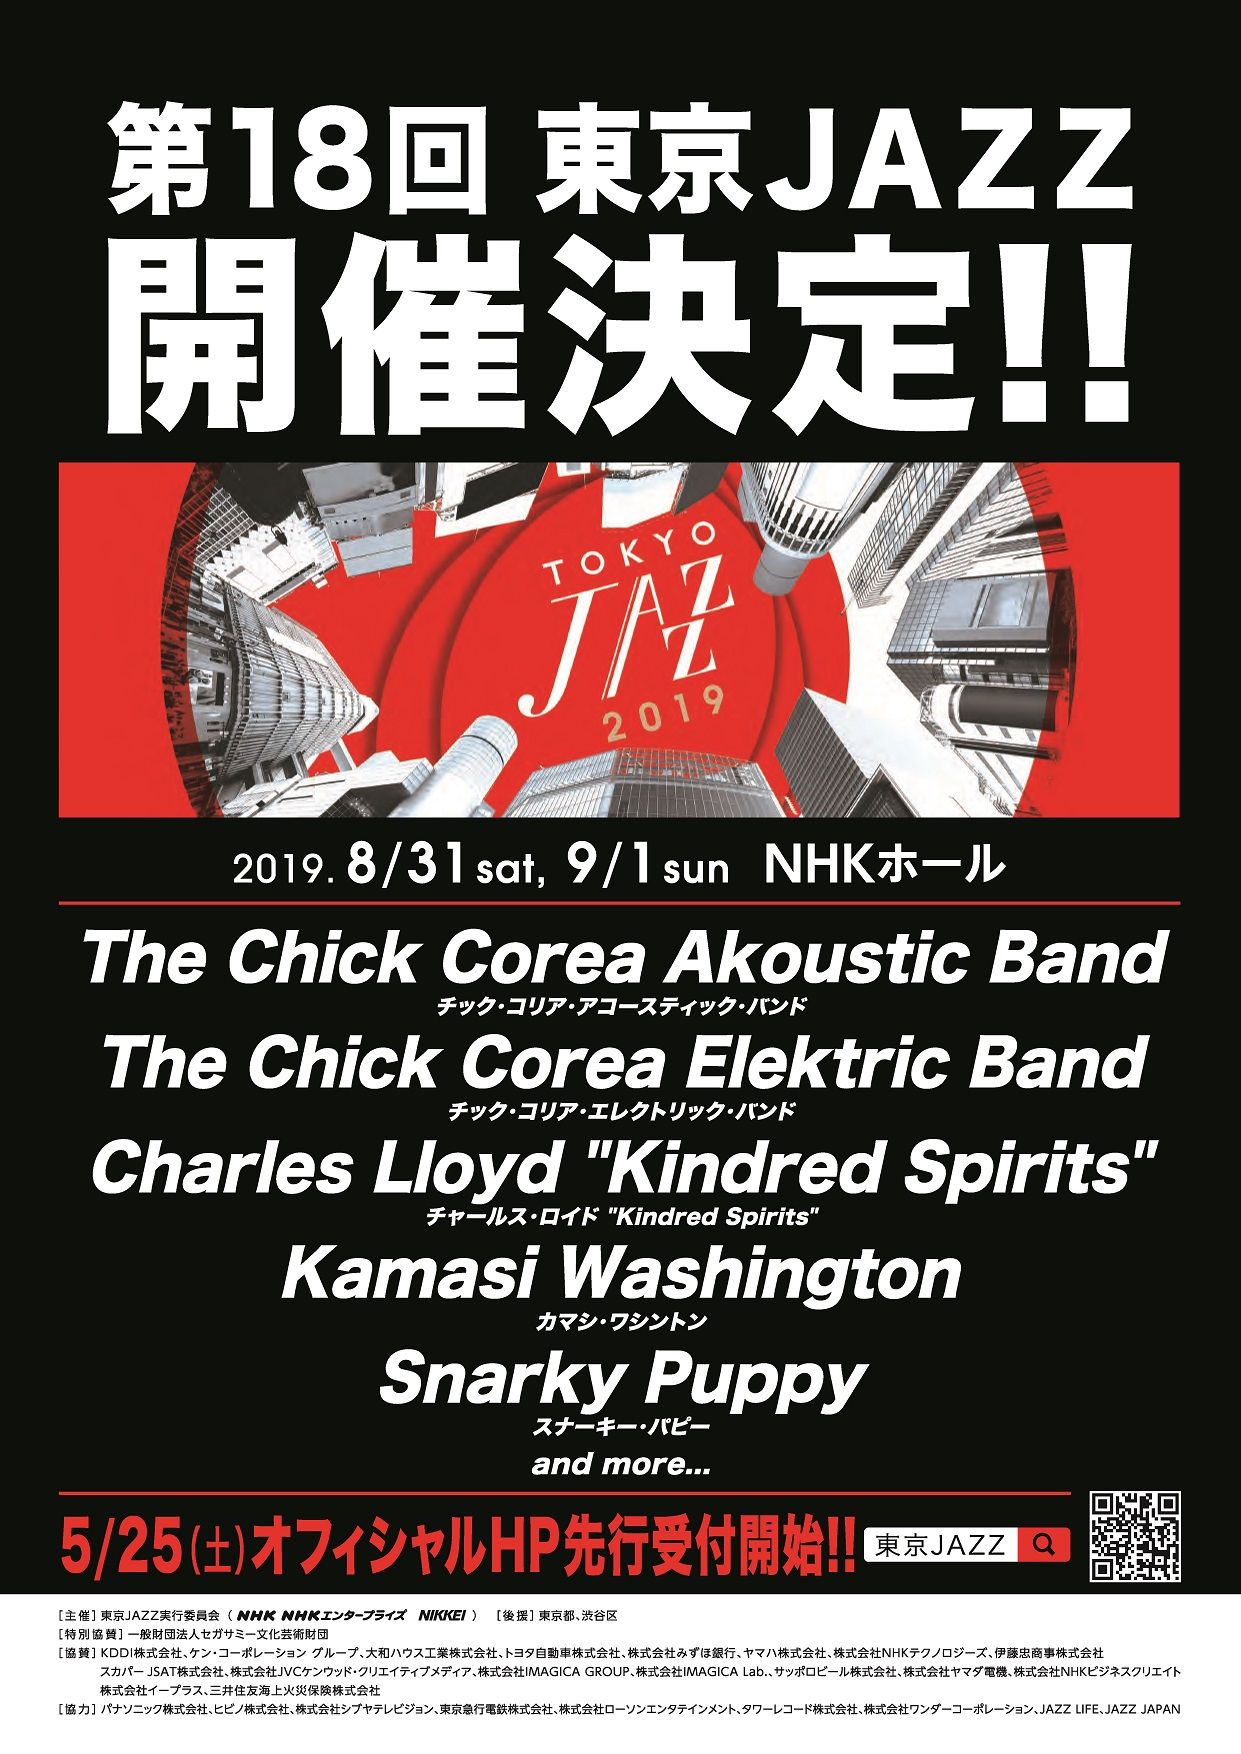 「第18回 東京JAZZ」開催決定！ 出演者第1弾にChick Corea、Charles Lloyd、Kamasi Washington、Snarky Puppyを発表